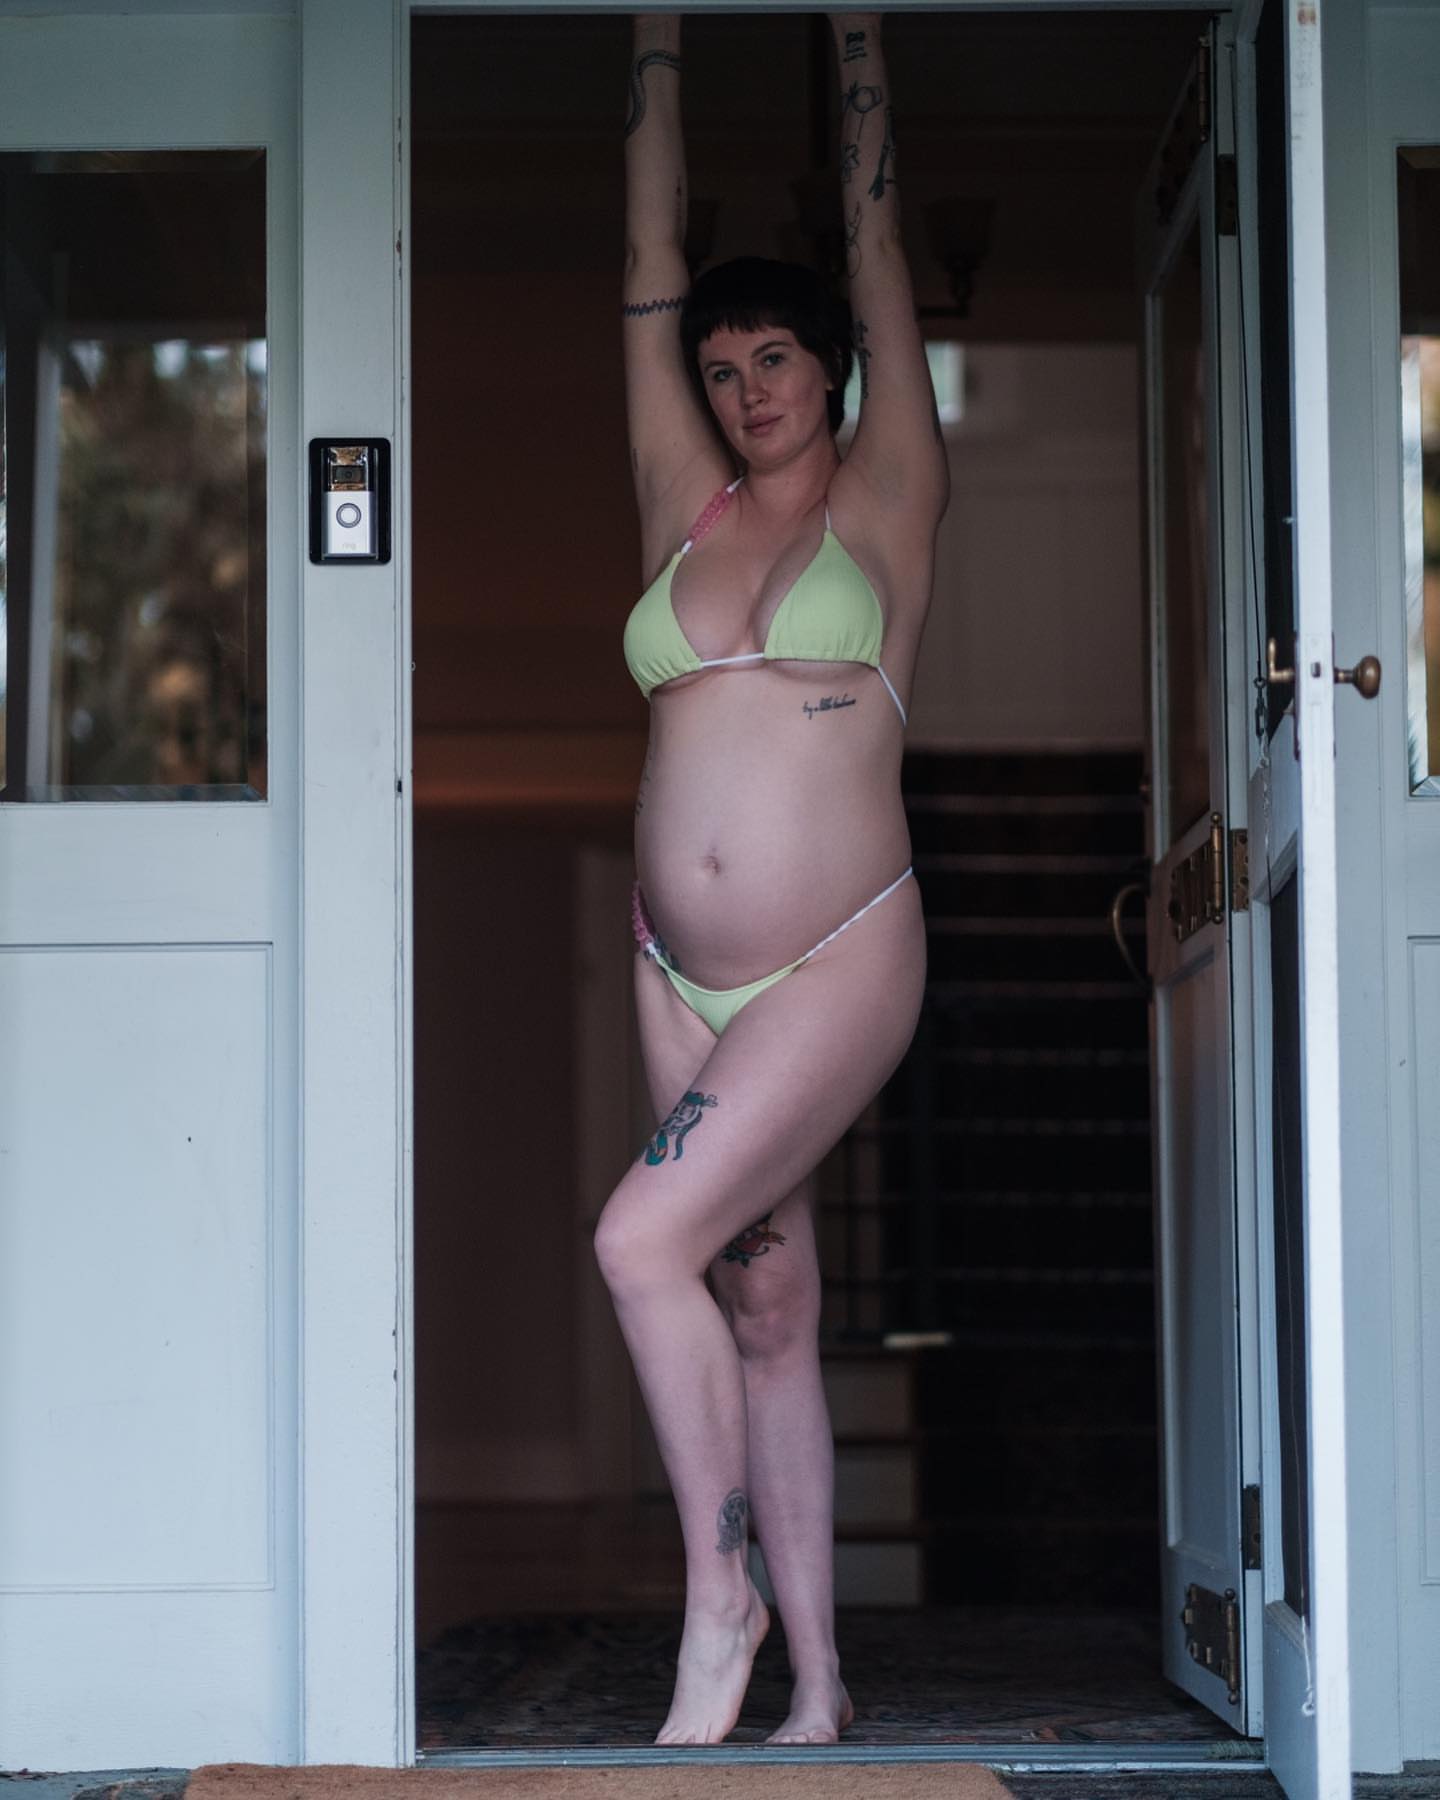 Fotos n°2 : El beb de Ireland Baldwin en bikini!